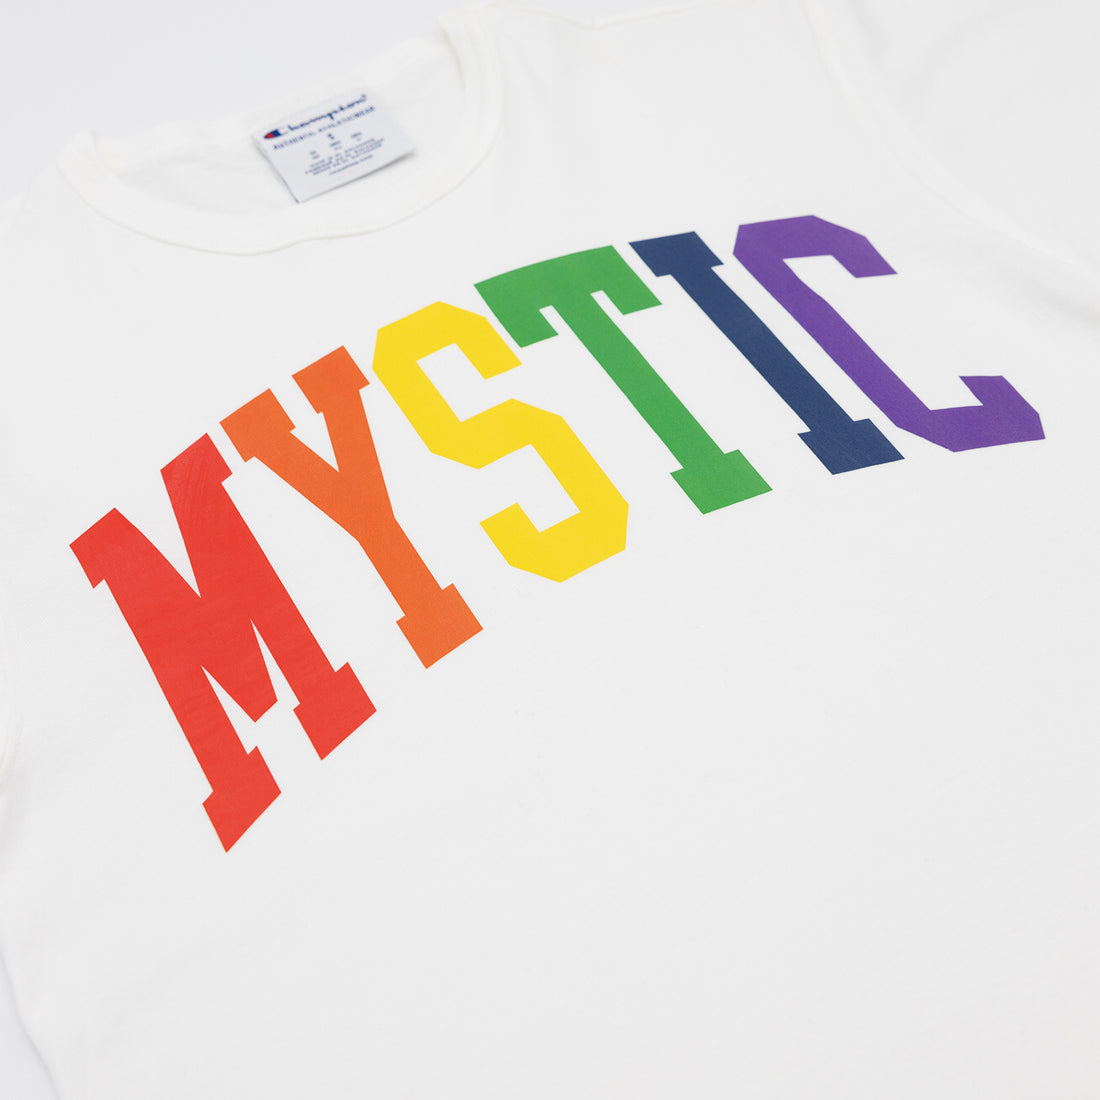 Mystic Pride T-Shirt